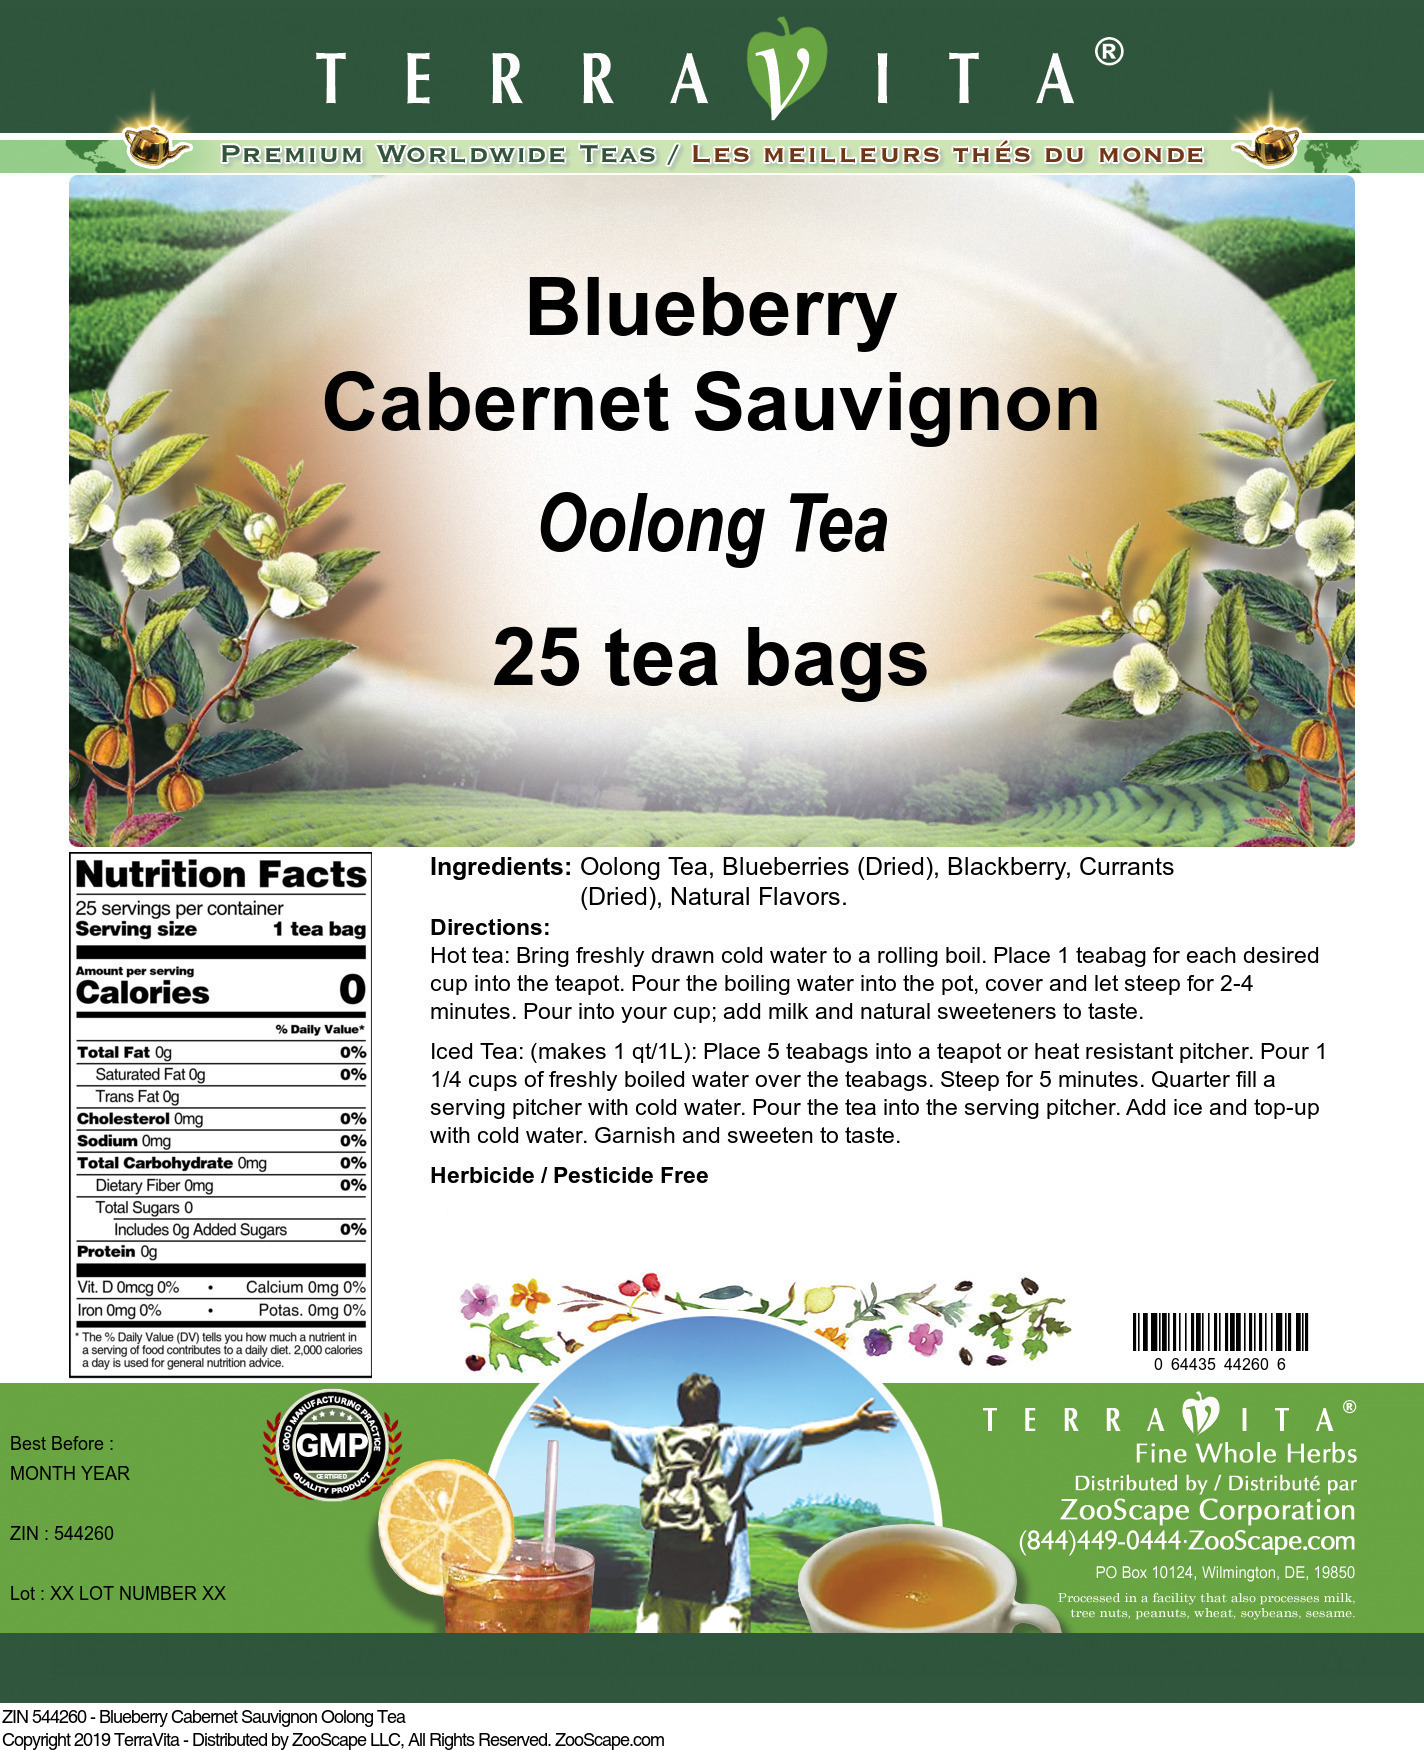 Blueberry Cabernet Sauvignon Oolong Tea - Label